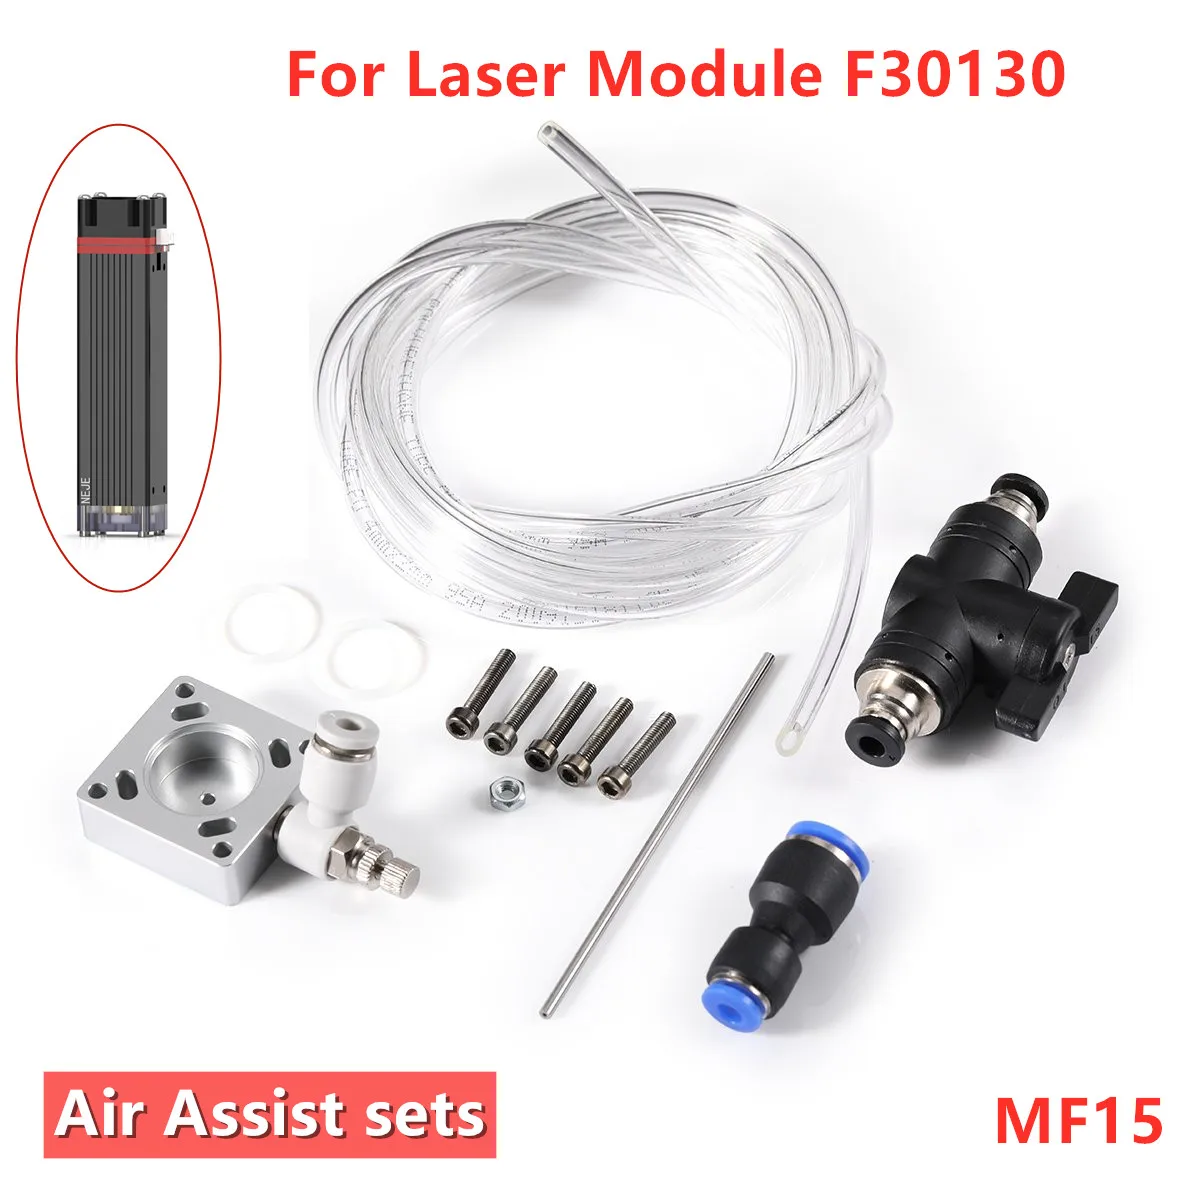 Neje mf8/mf11/mf15 controle manual kit de assistência a ar para módulos a laser neje